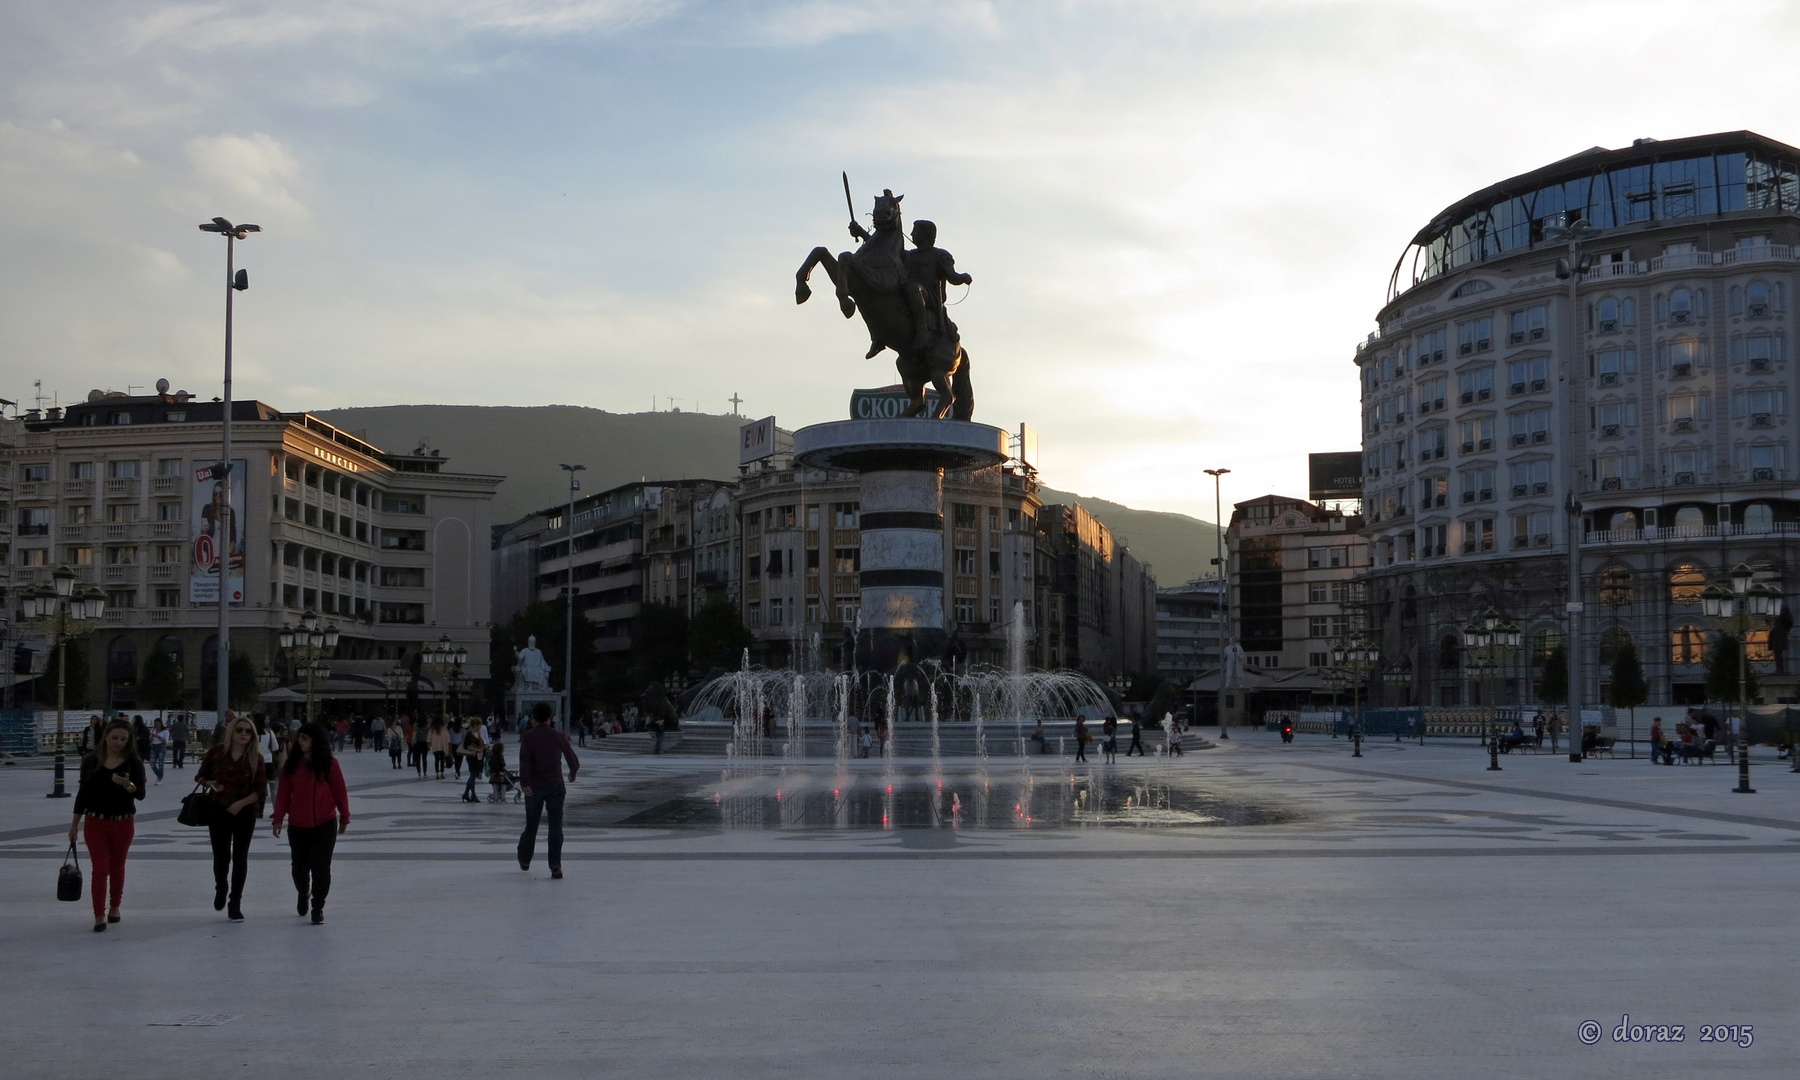 File:10 Skopje (33663971371).jpg - Wikimedia Commons